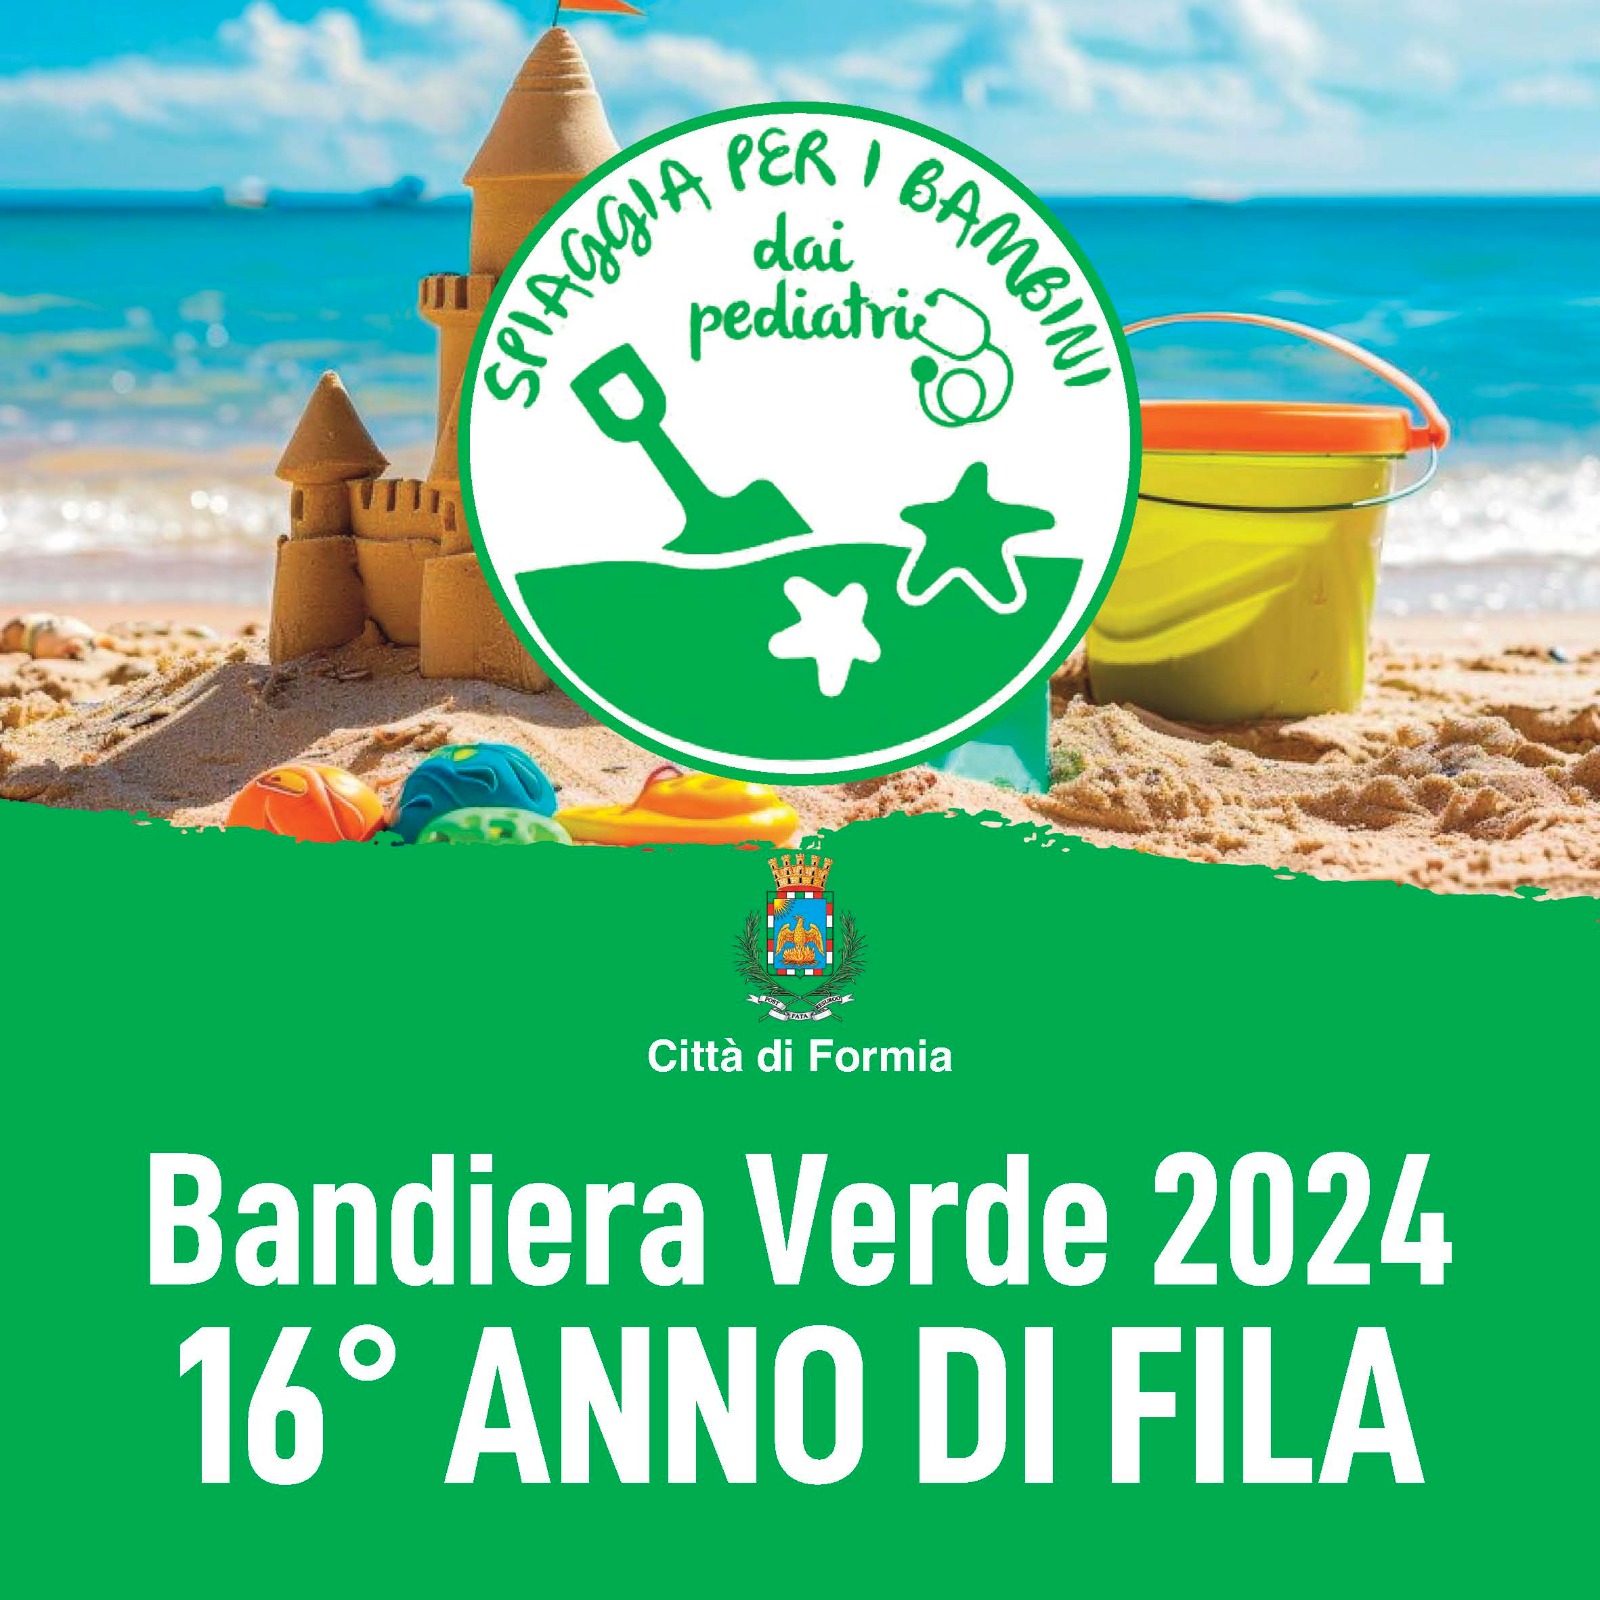 Formia /  Spiaggia per i bambini, città insignita per il 16° anno consecutivo della Bandiera Verde